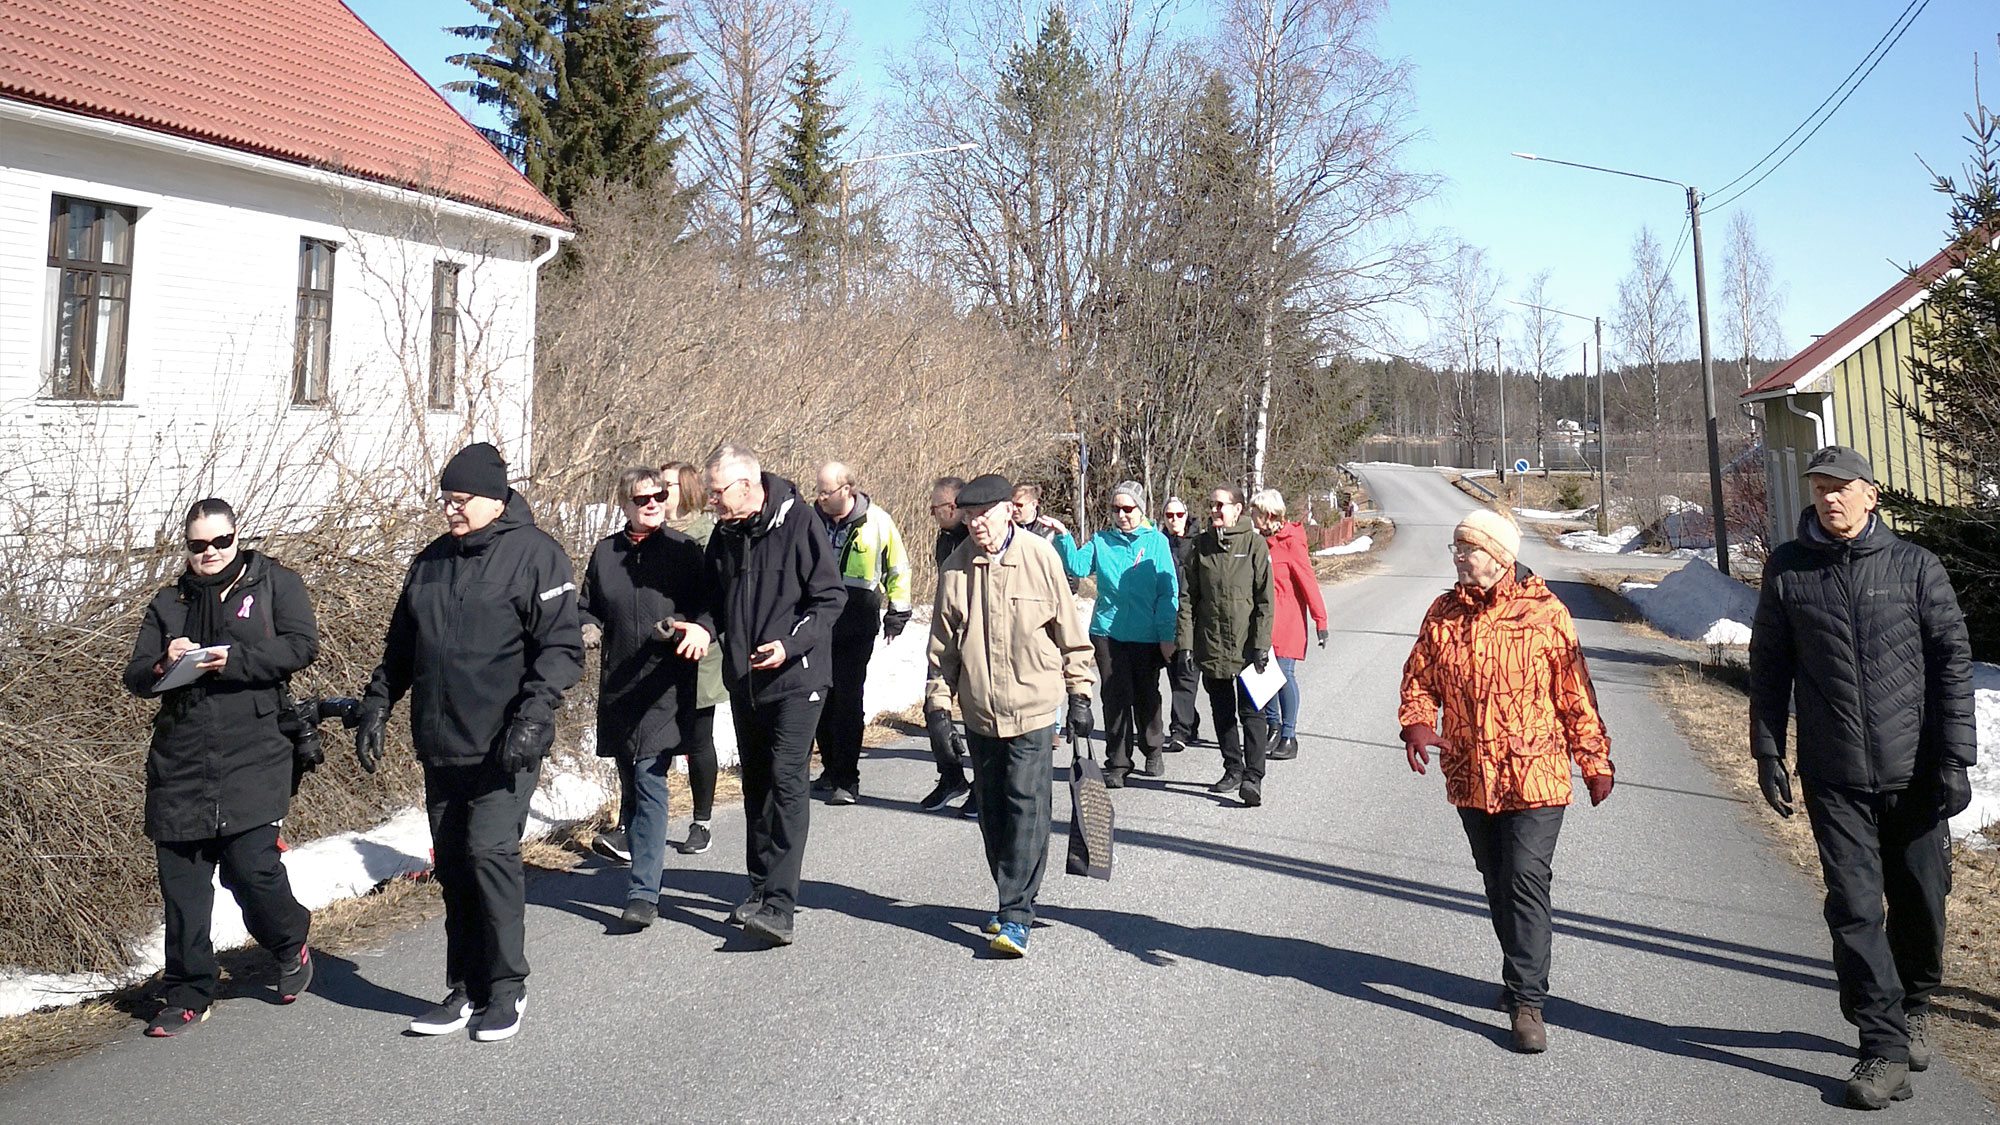 Joukko ihmisiä kävelemässä ja keskustelemassa maaseutumaisella asuinalueella.